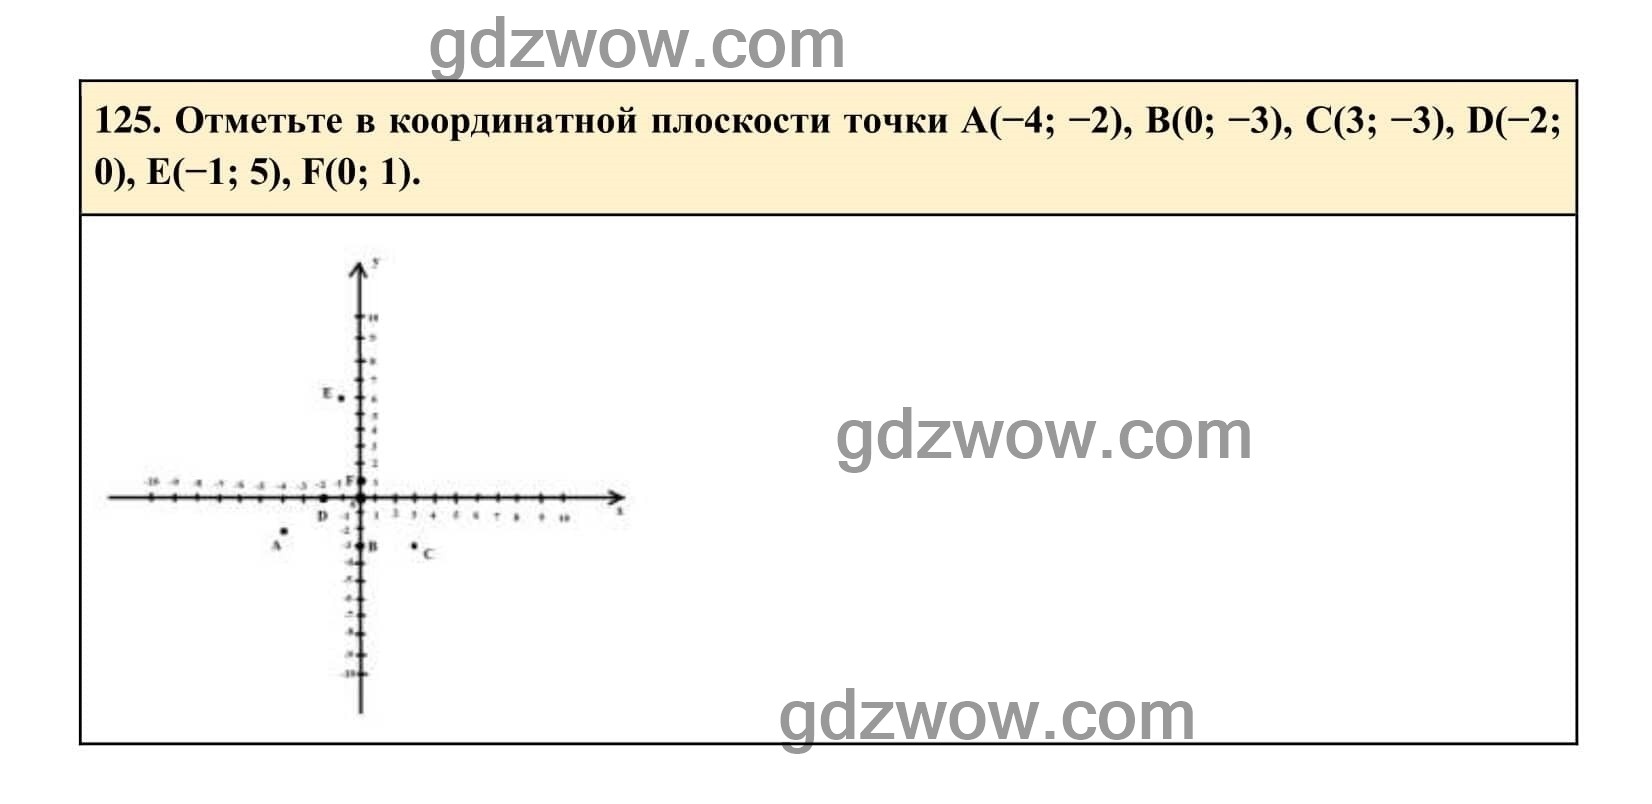 Упражнение 125 - ГДЗ по Алгебре 7 класс Учебник Макарычев (решебник) - GDZwow